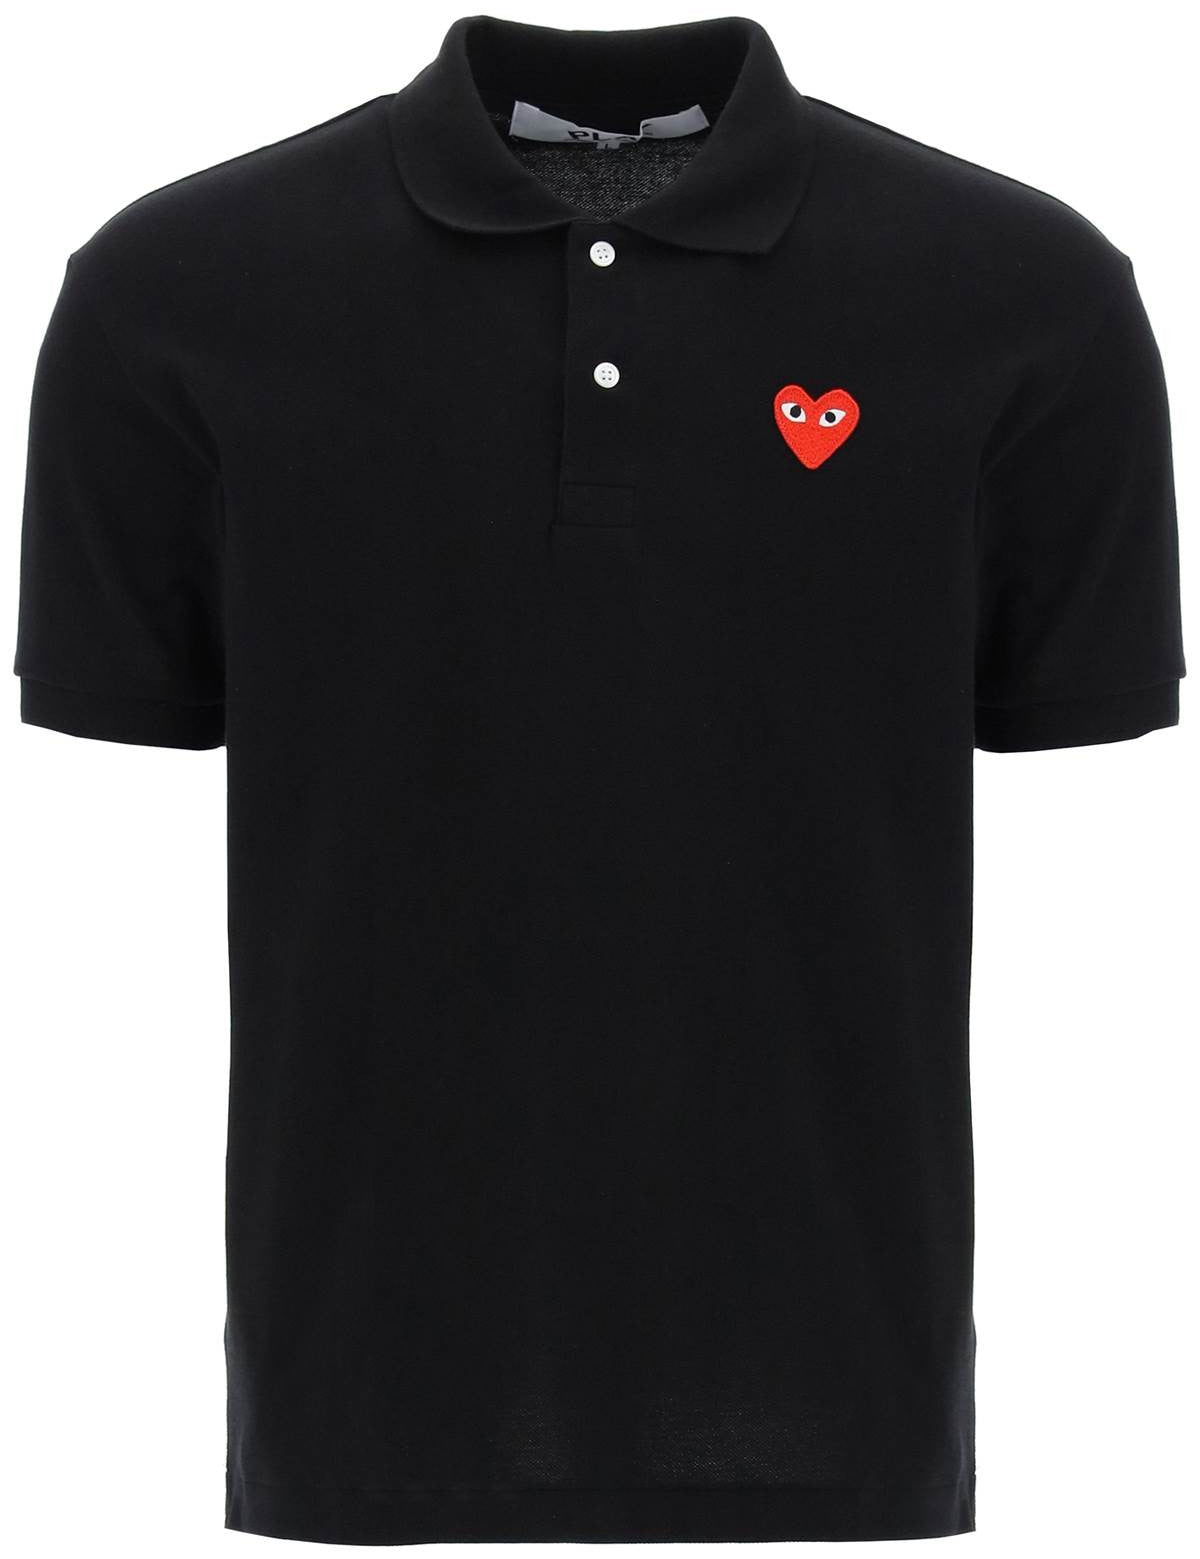 heart-polo-shirt_41dc4aeb-1db7-4be4-b496-379100b1baee.jpg